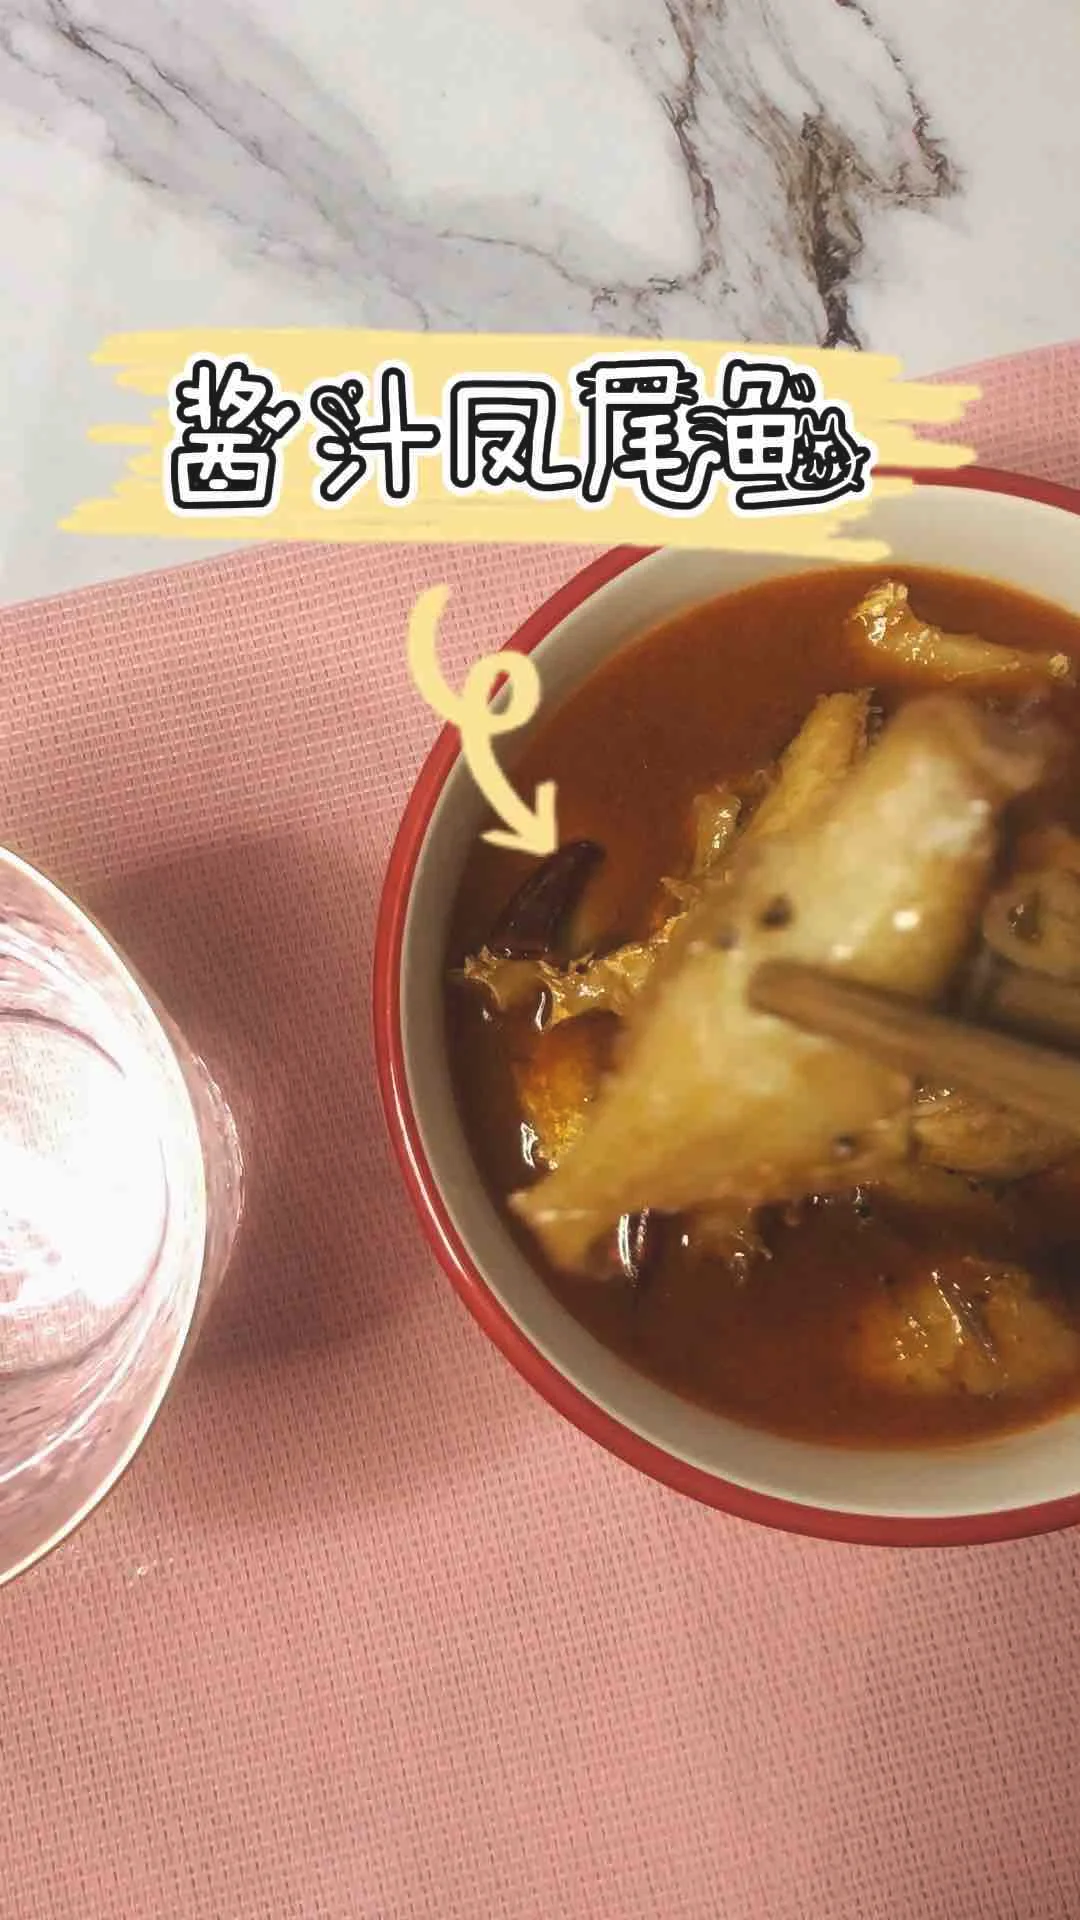 酱汁凤尾鱼的做法-酸辣味烧菜谱